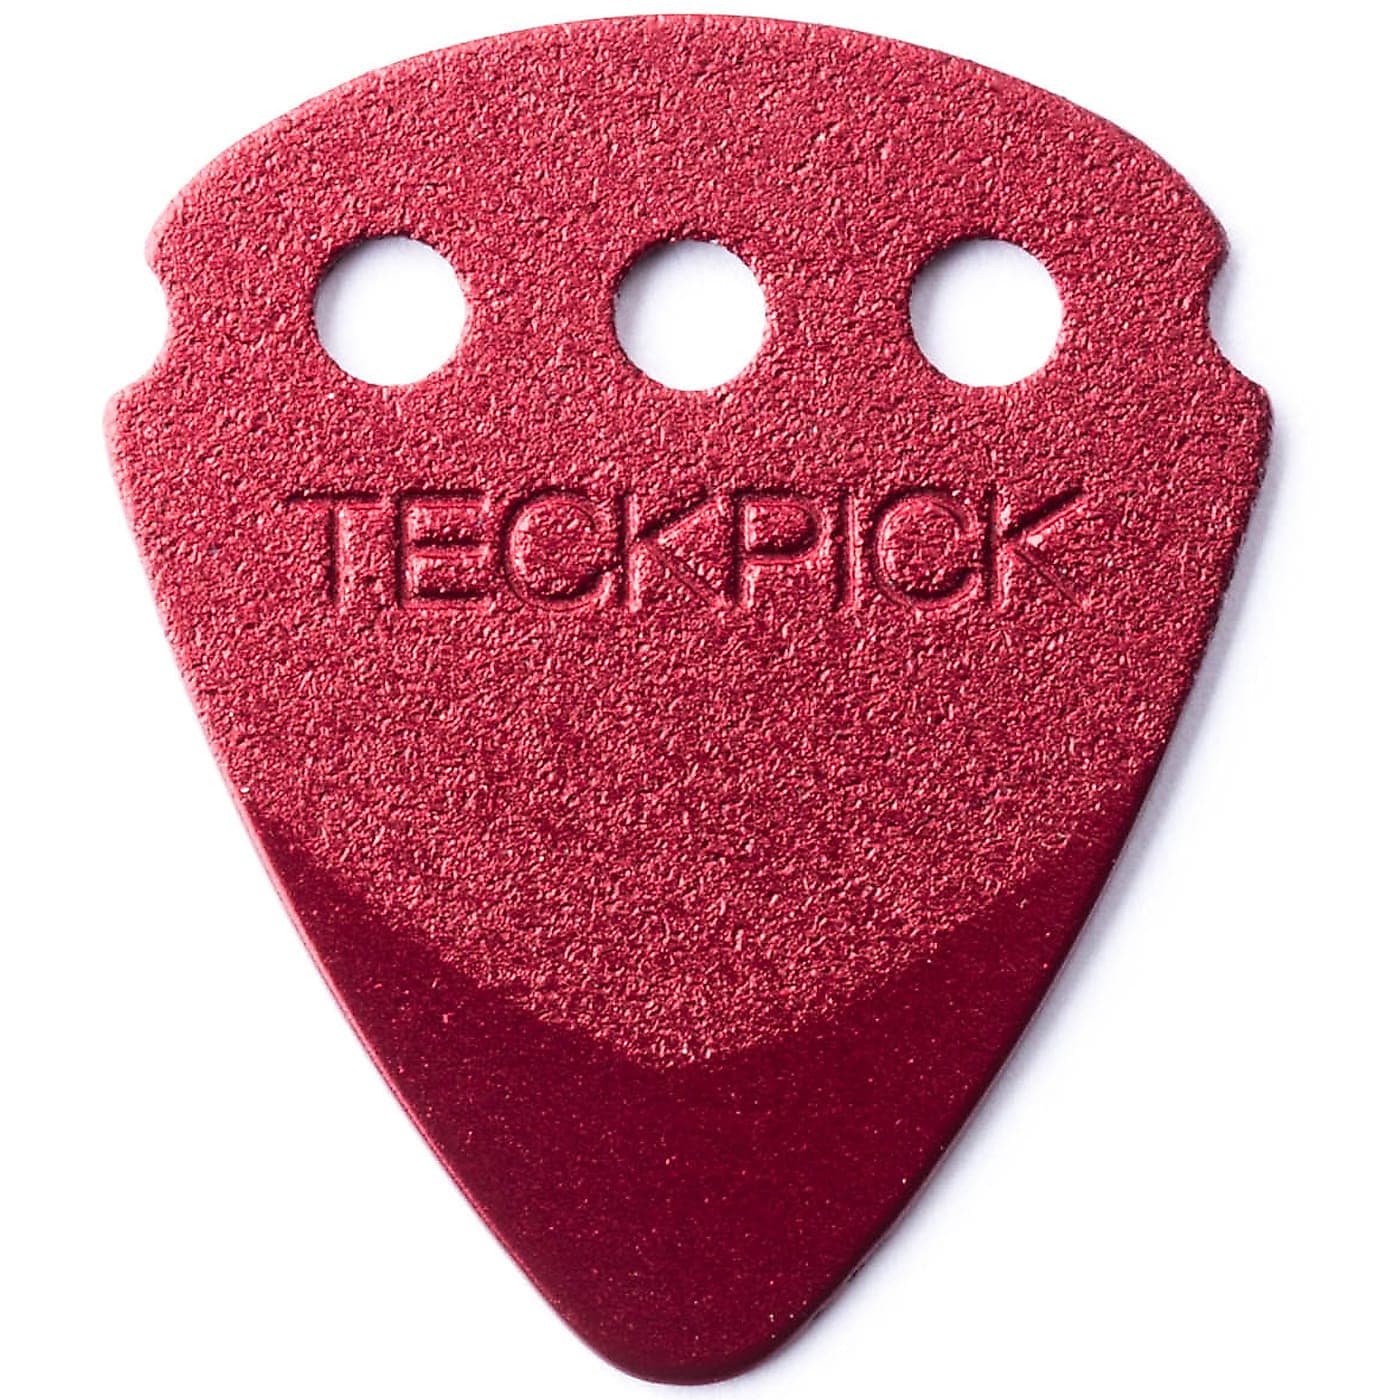 Dunlop 467RRED Teckpick 12Pack  медиаторы, красные, 12 шт.